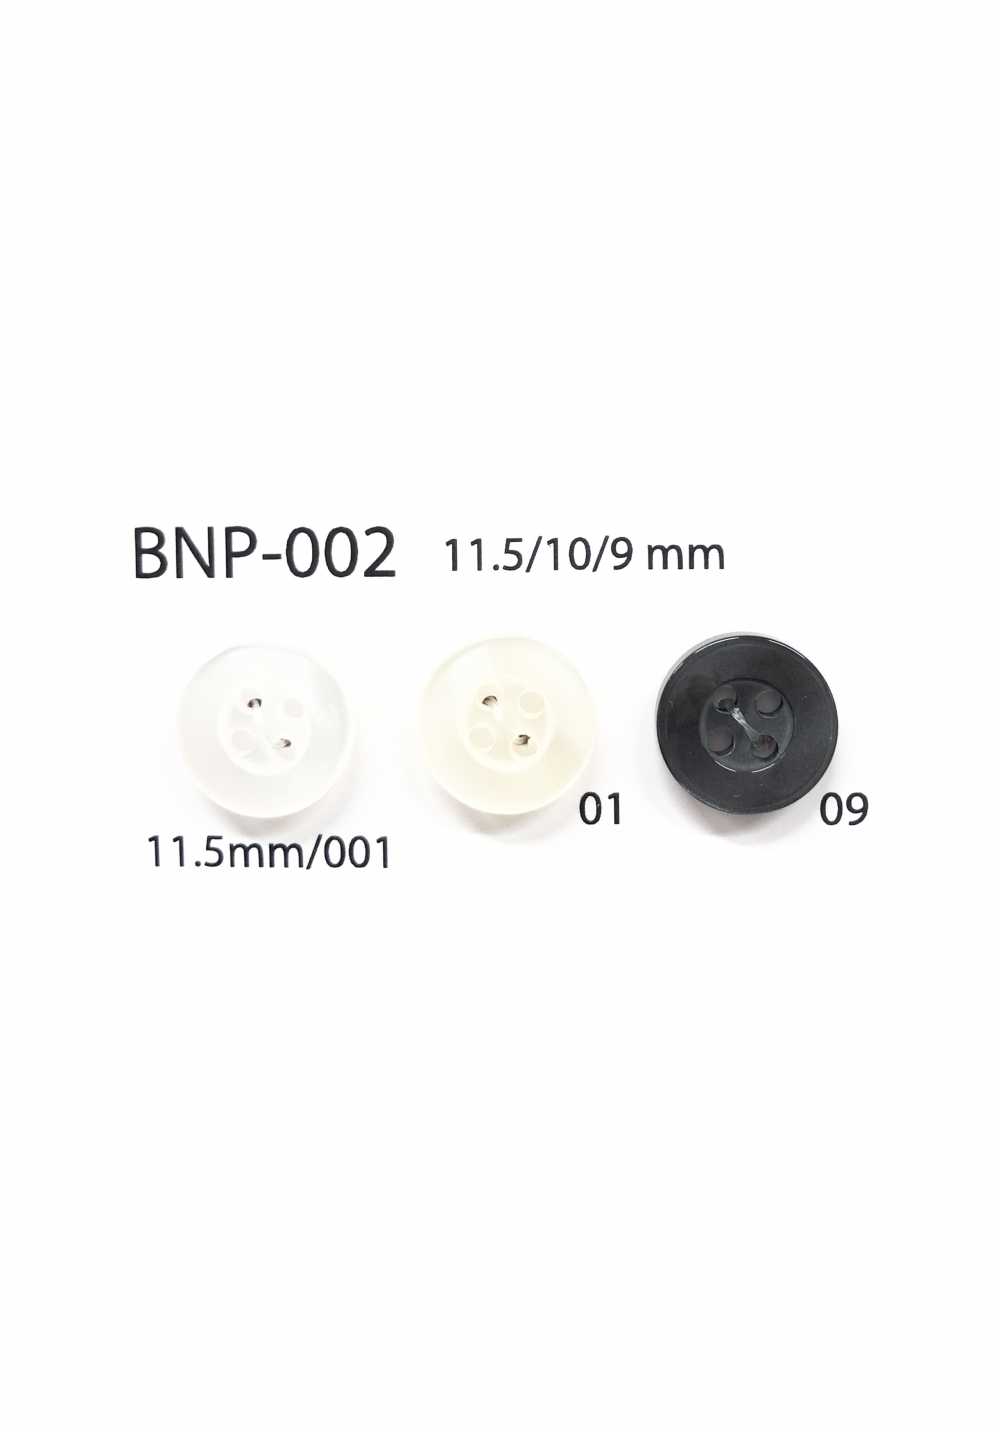 BNP-002 Bottone A 4 Fori In Biopoliestere[Pulsante] IRIS